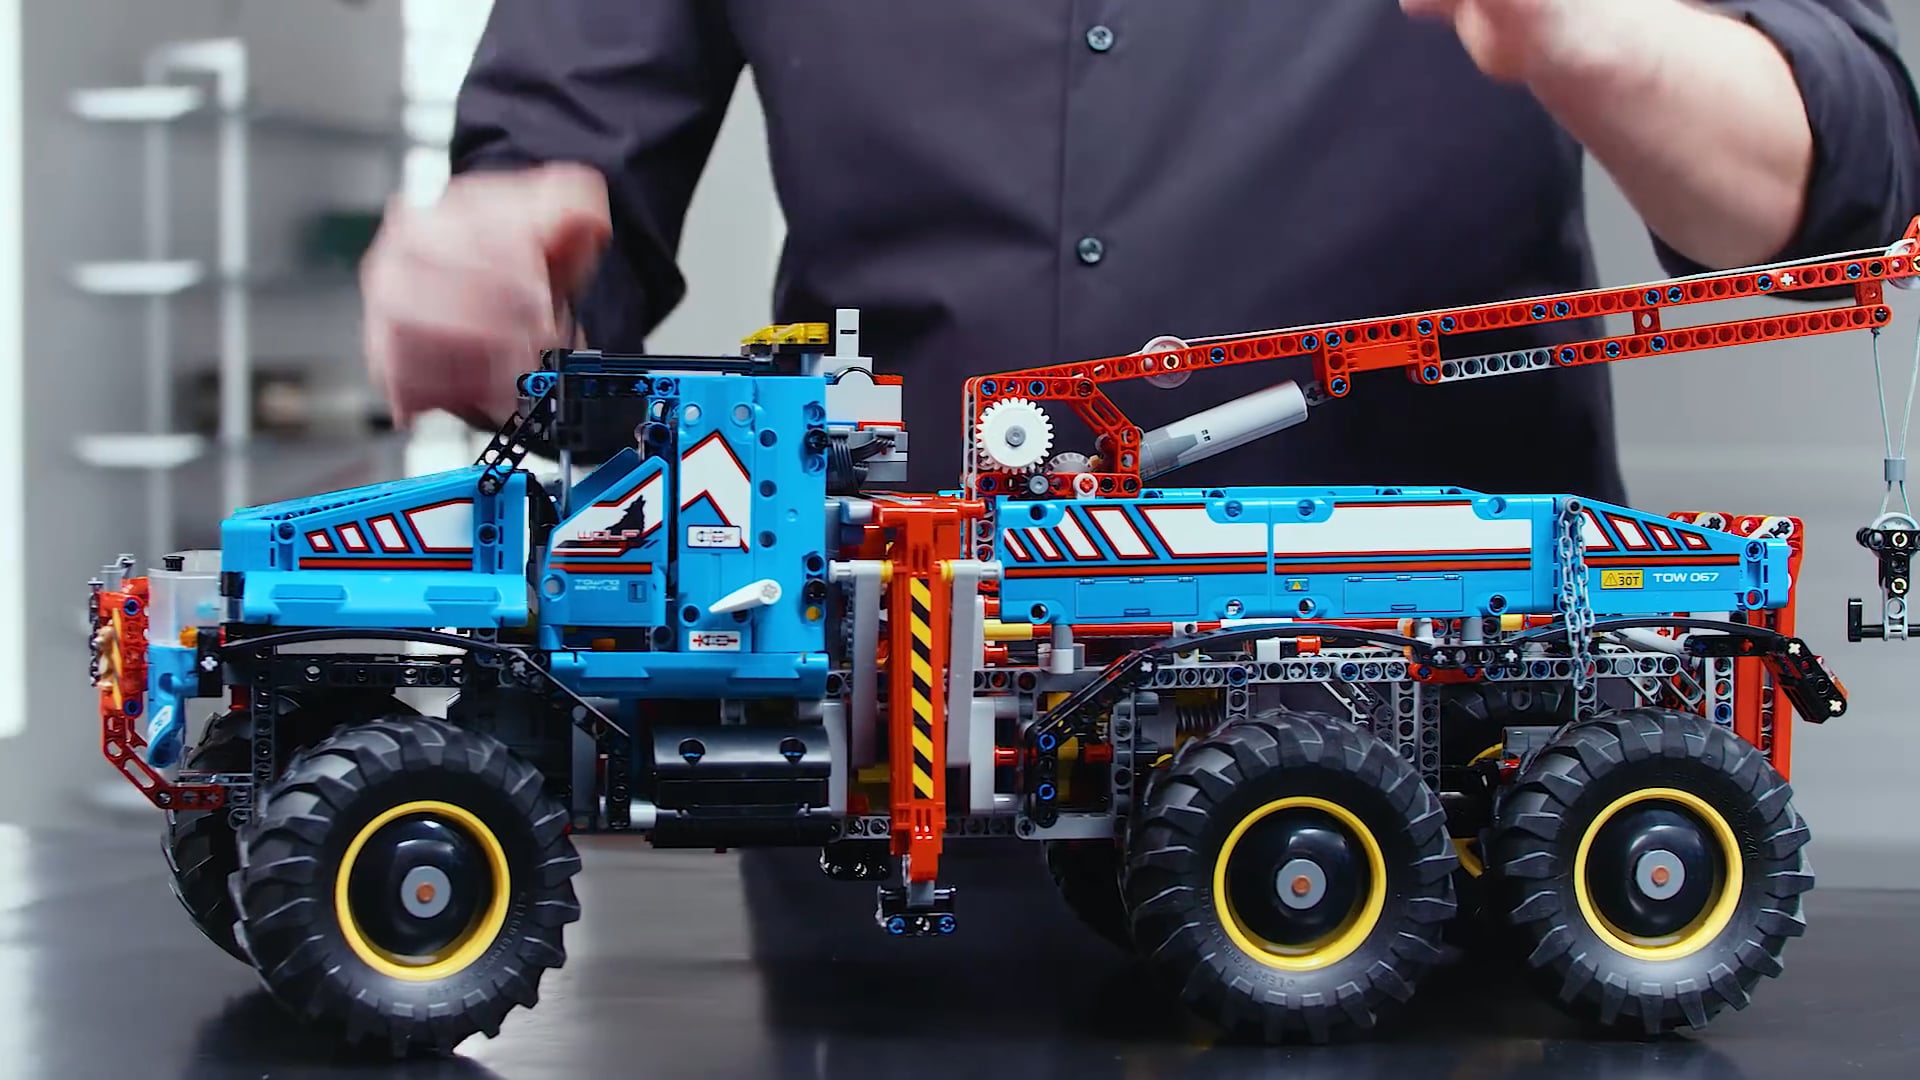 Voorlopige naam defect bloeden LEGO Technic 42070 6x6 Allterrain Sleepwagen - MisterBricks on Vimeo